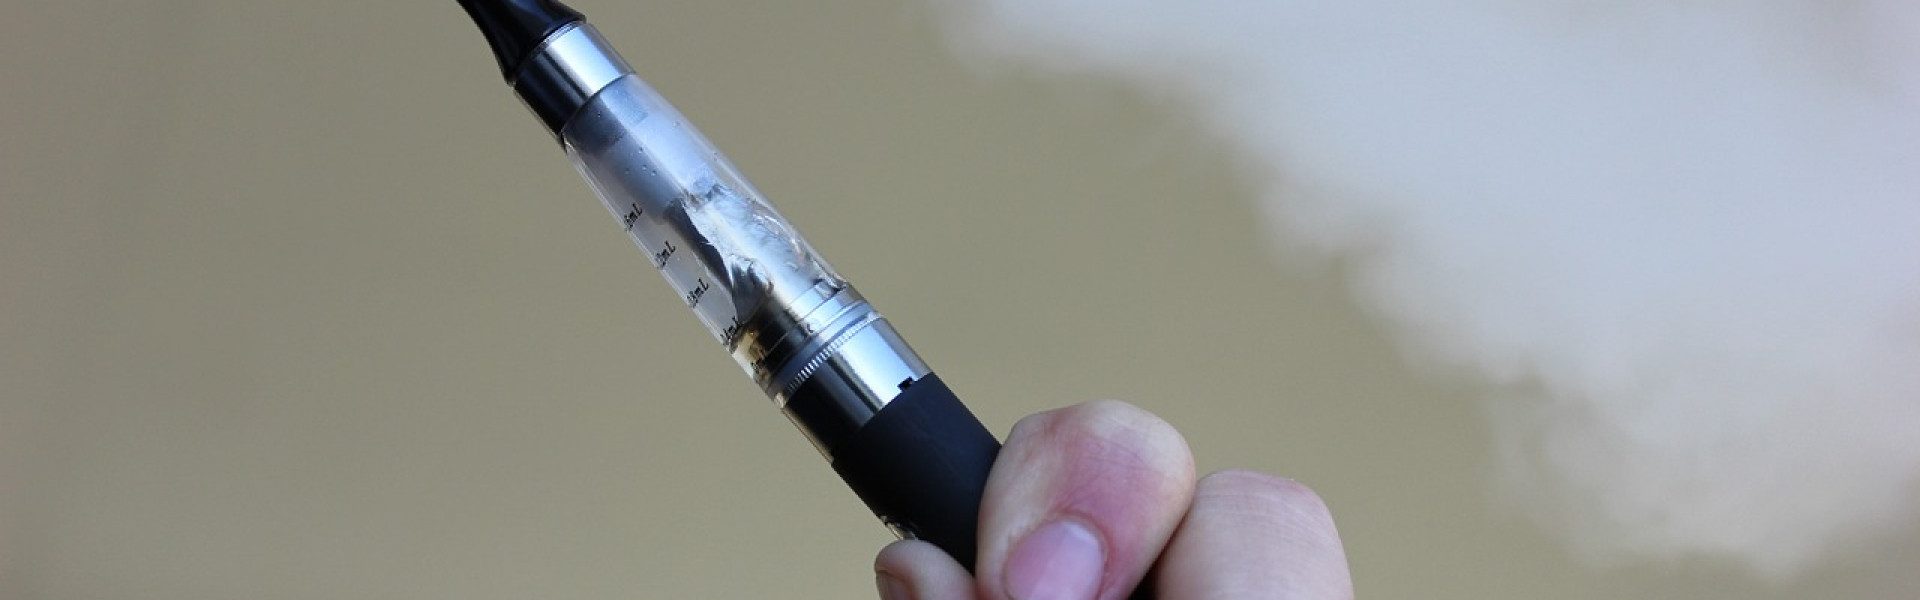 Les cigarettes électroniques sont-elles concernées par l’obsolescence programmée